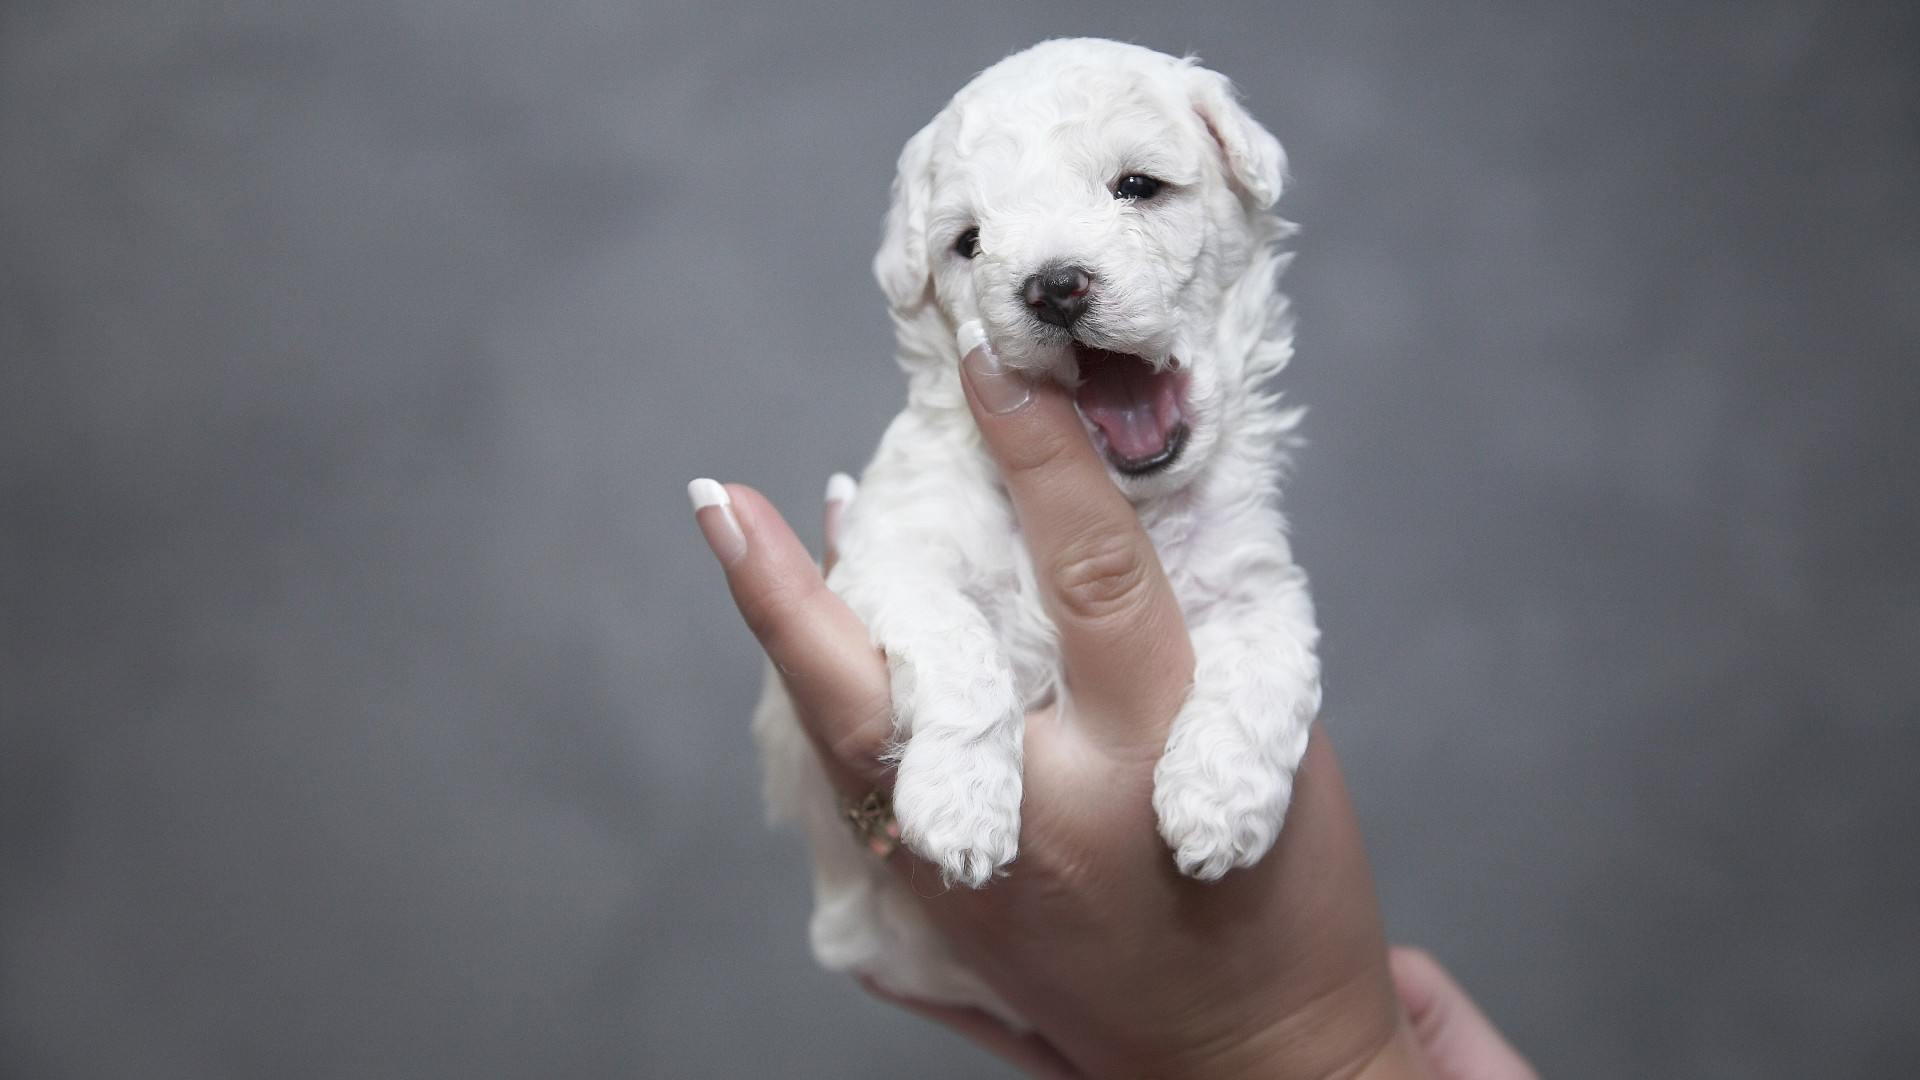 Cutest white puppy wallpaper 1920x1080